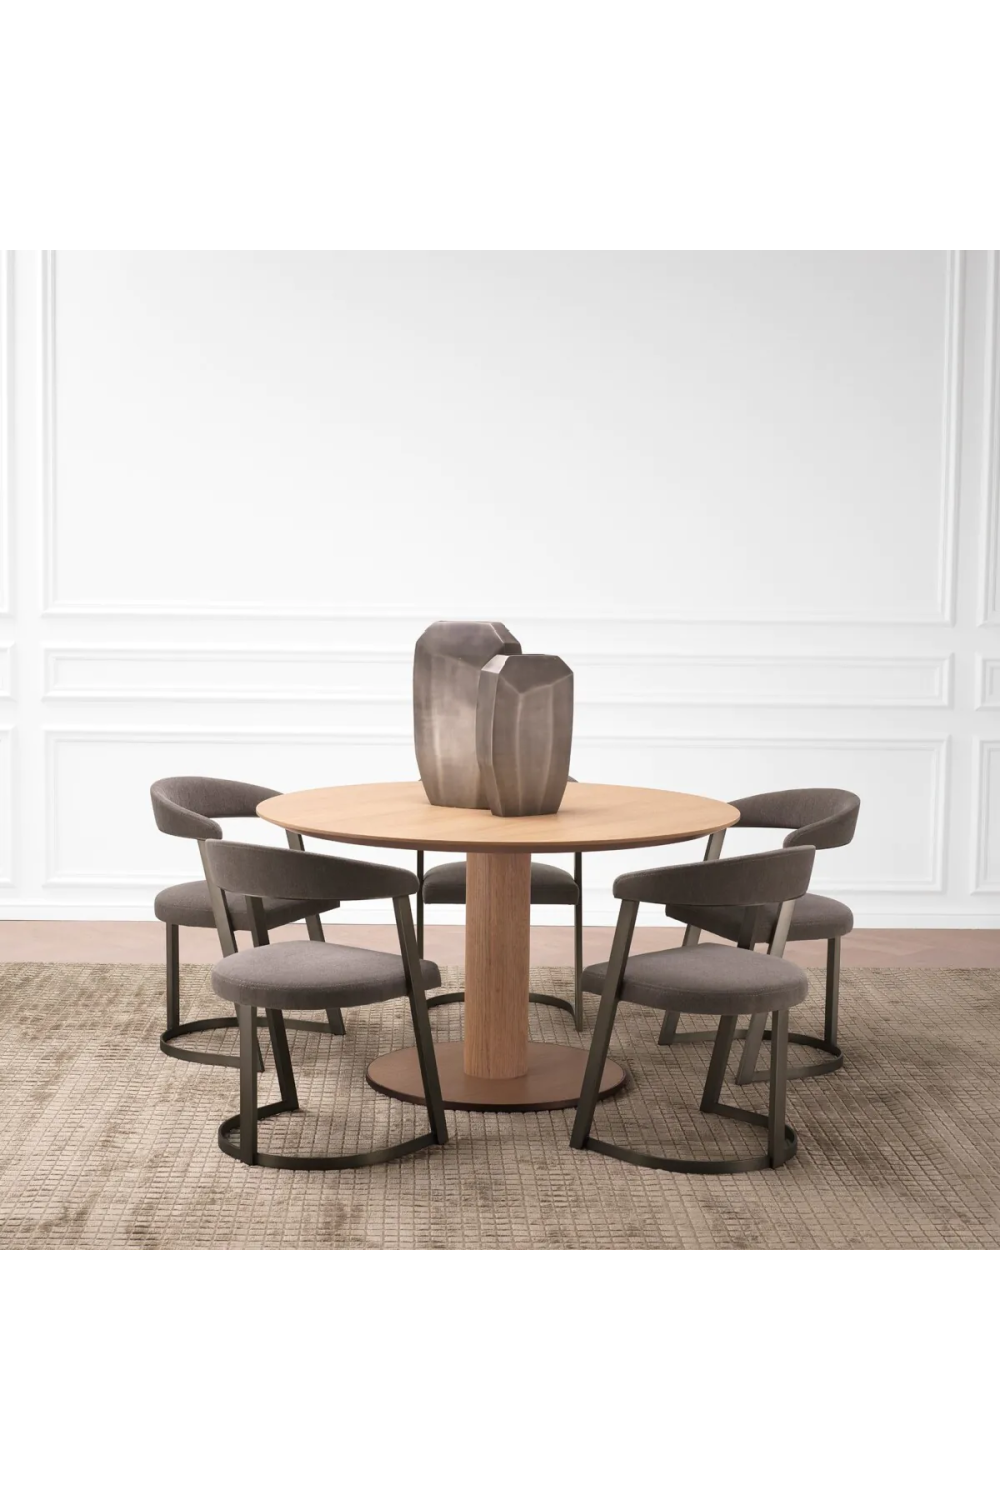 Round Oak Pedestal Dining Table | Eichholtz Astro | Oroa.com